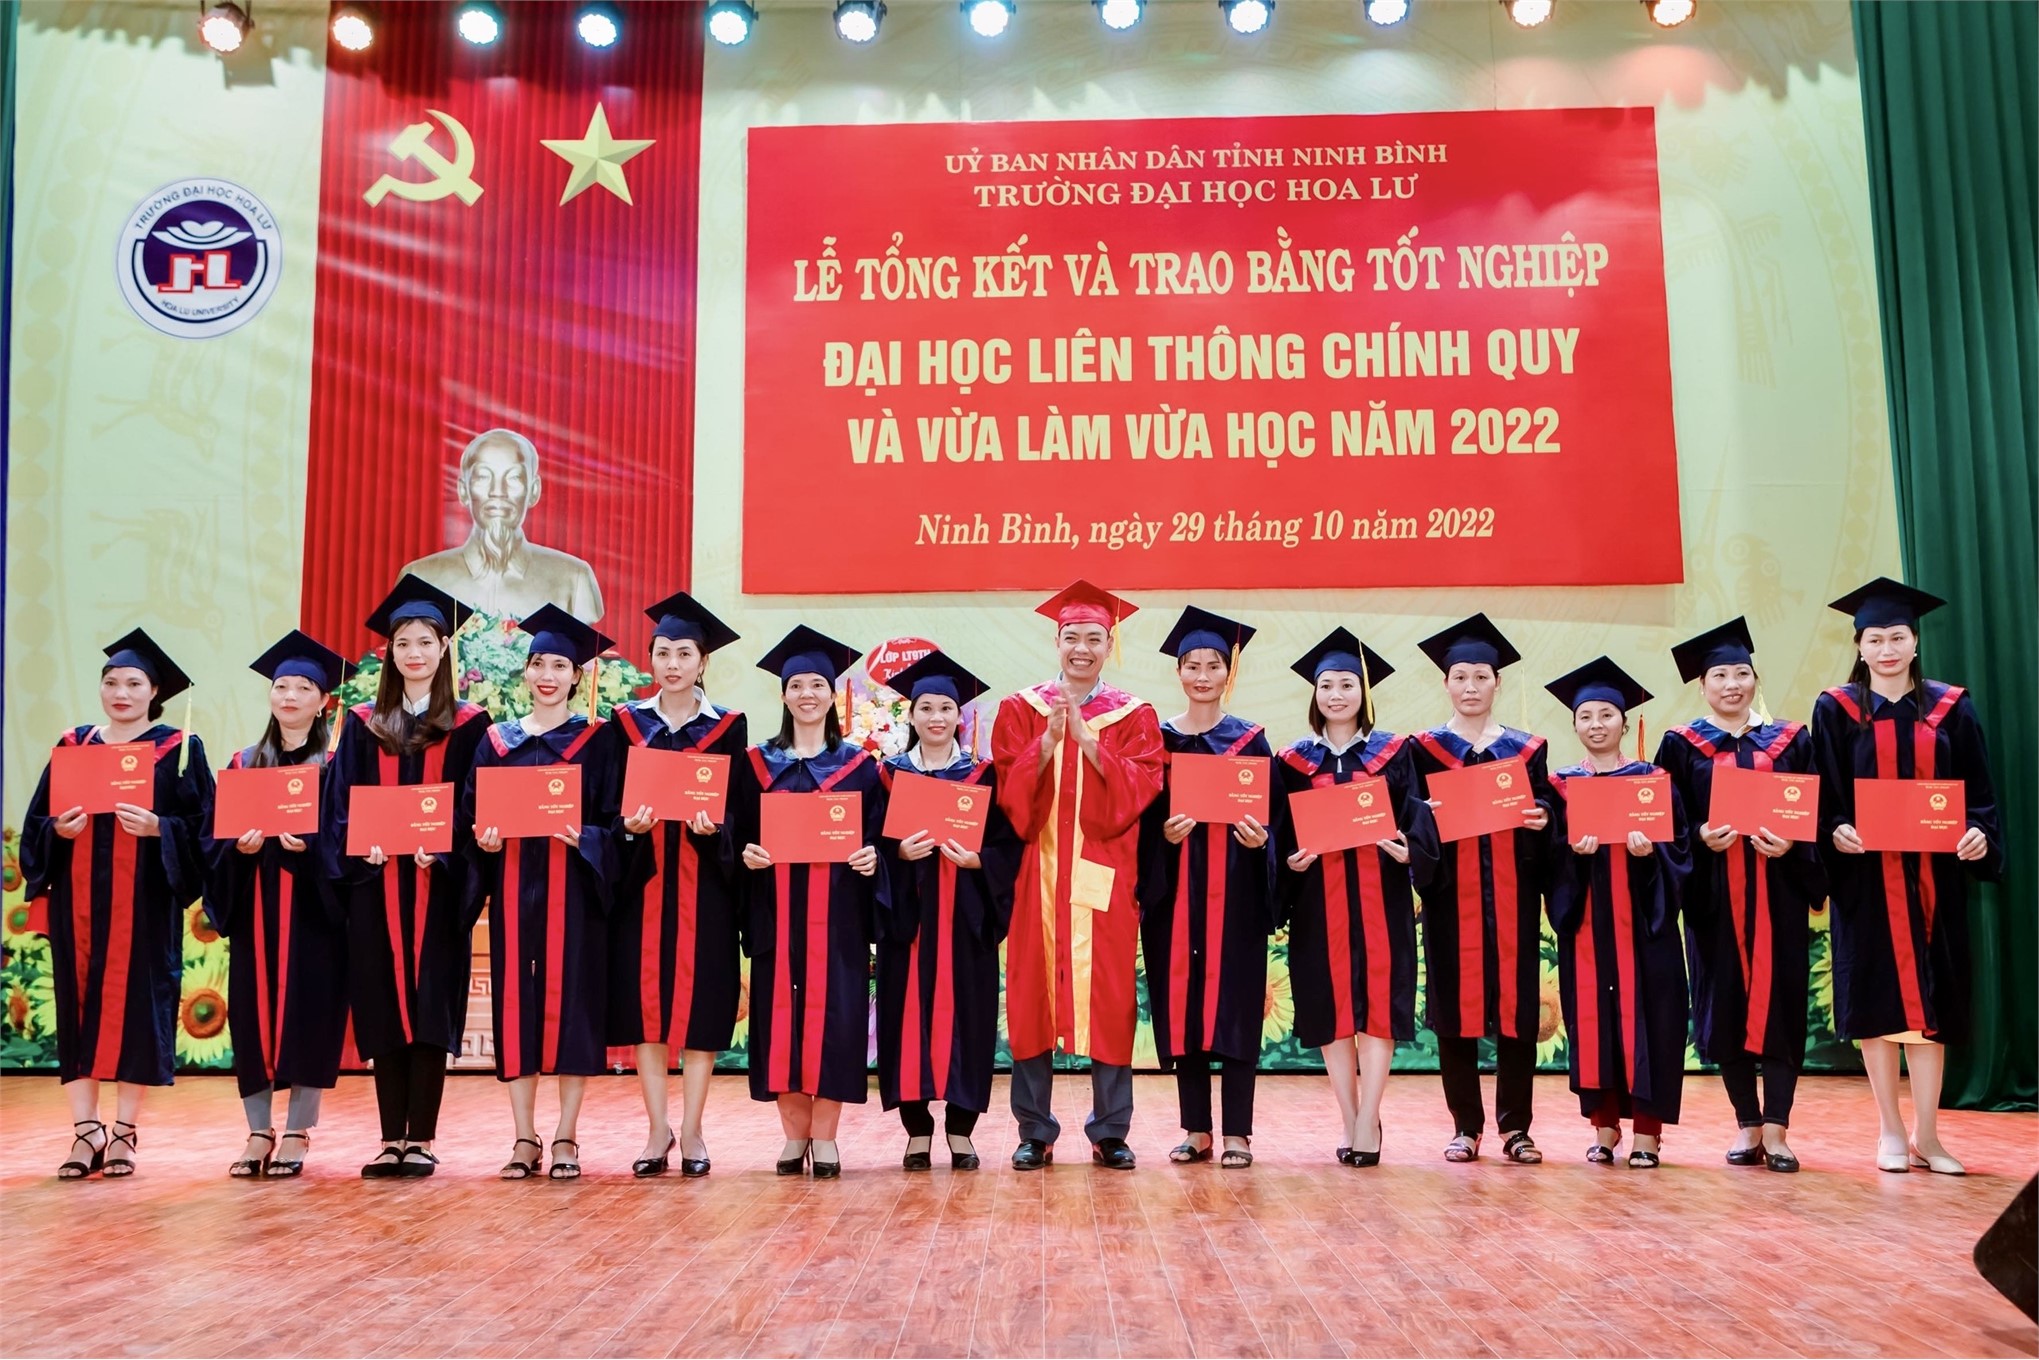 Lễ tổng kết và trao bằng tốt nghiệp đại học hệ liên thông chính quy và liên thông VLVH năm 2022